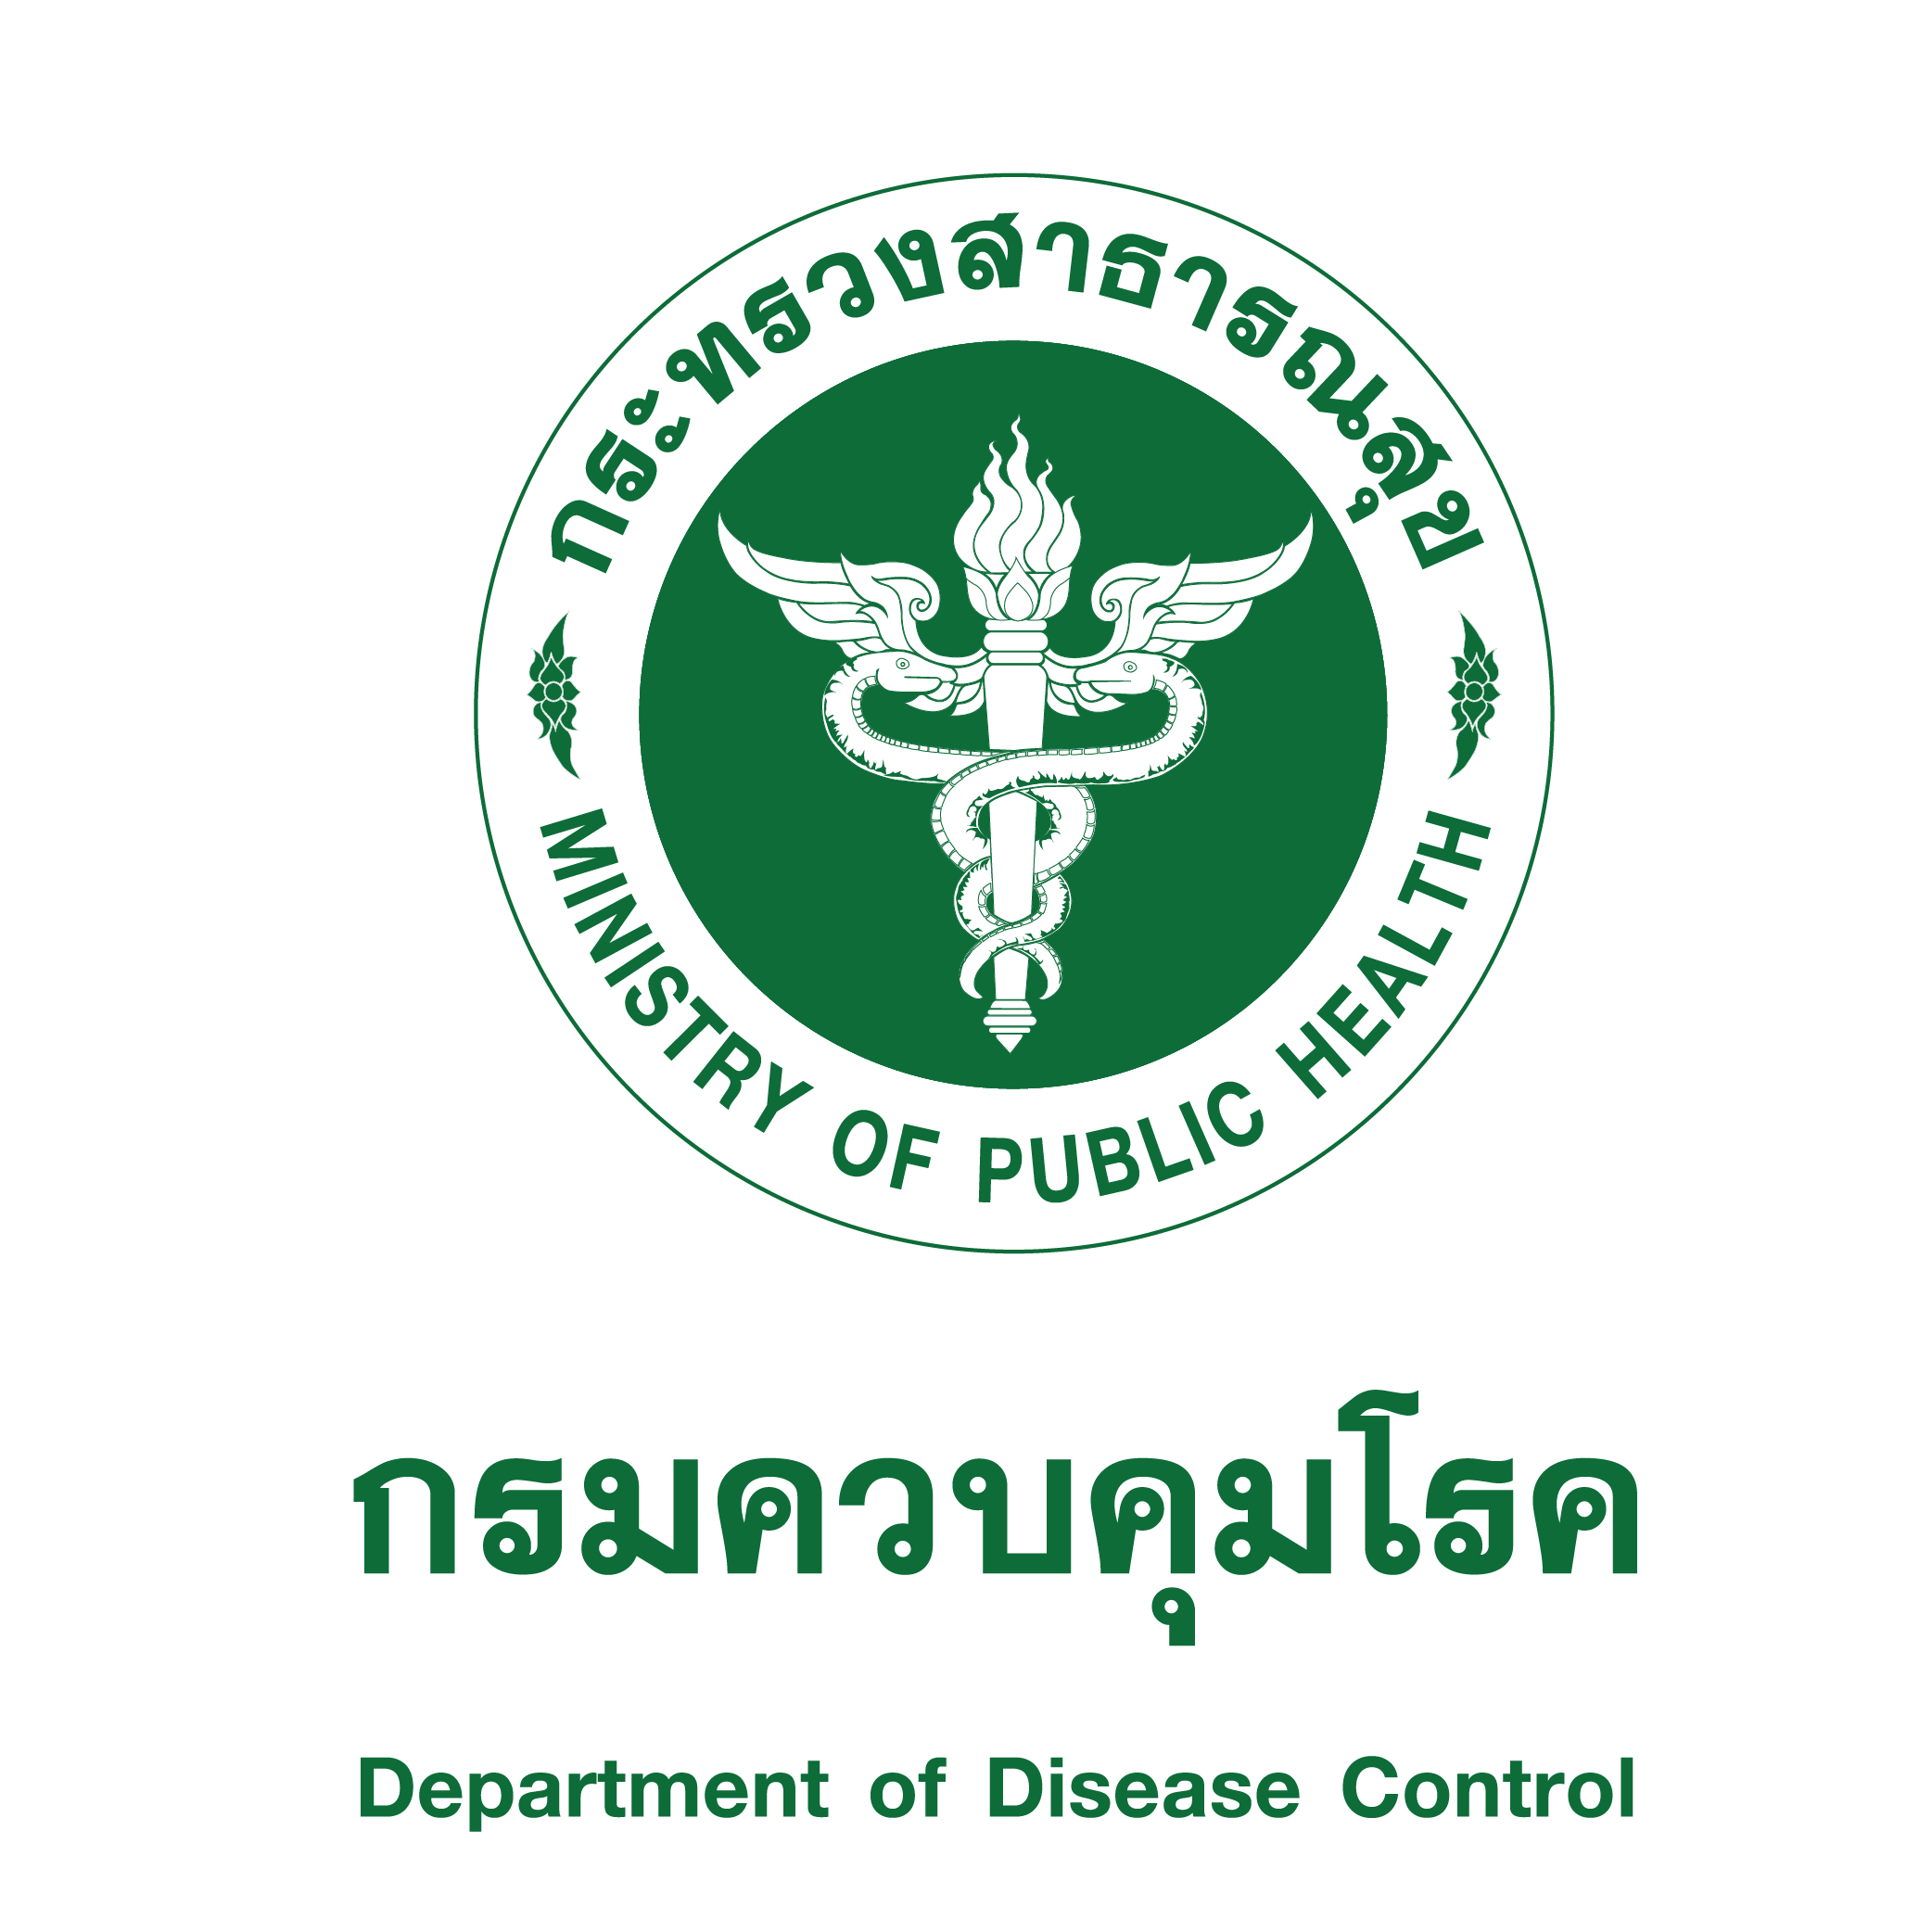 กลุ่มพัฒนาระบบบริหารองค์กร ขอประชาสัมพันธ์เชิญประชุมวิชาการเวชศาสตร์และวิทยาการด้านผู้สูงอายุ และจัดงาน The 4 Thailand Elderly Health Service Forum 2023